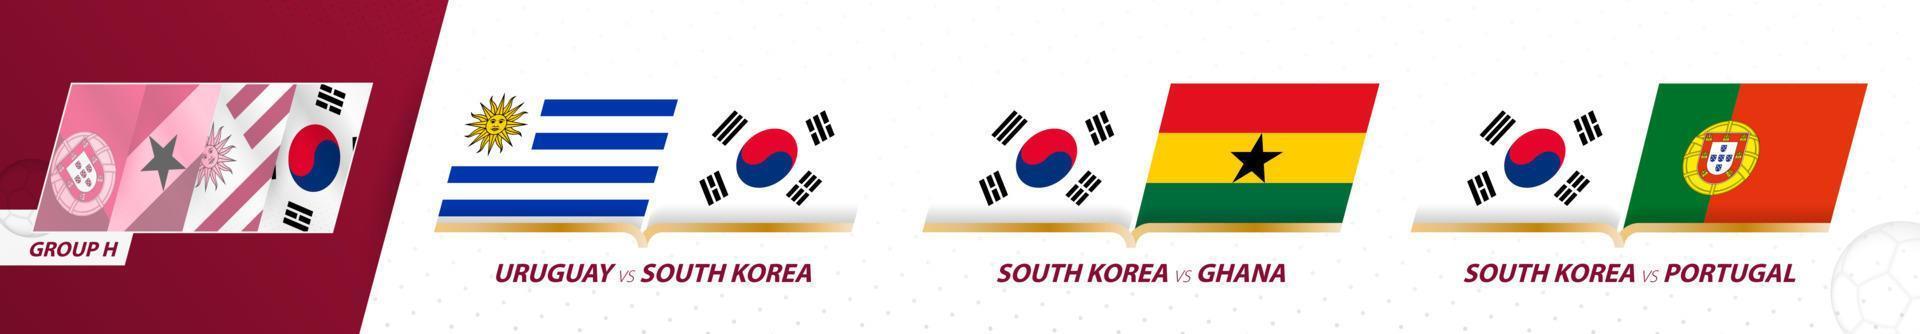 jogos da equipe de futebol da coreia do sul no grupo h do torneio internacional de futebol 2022. vetor